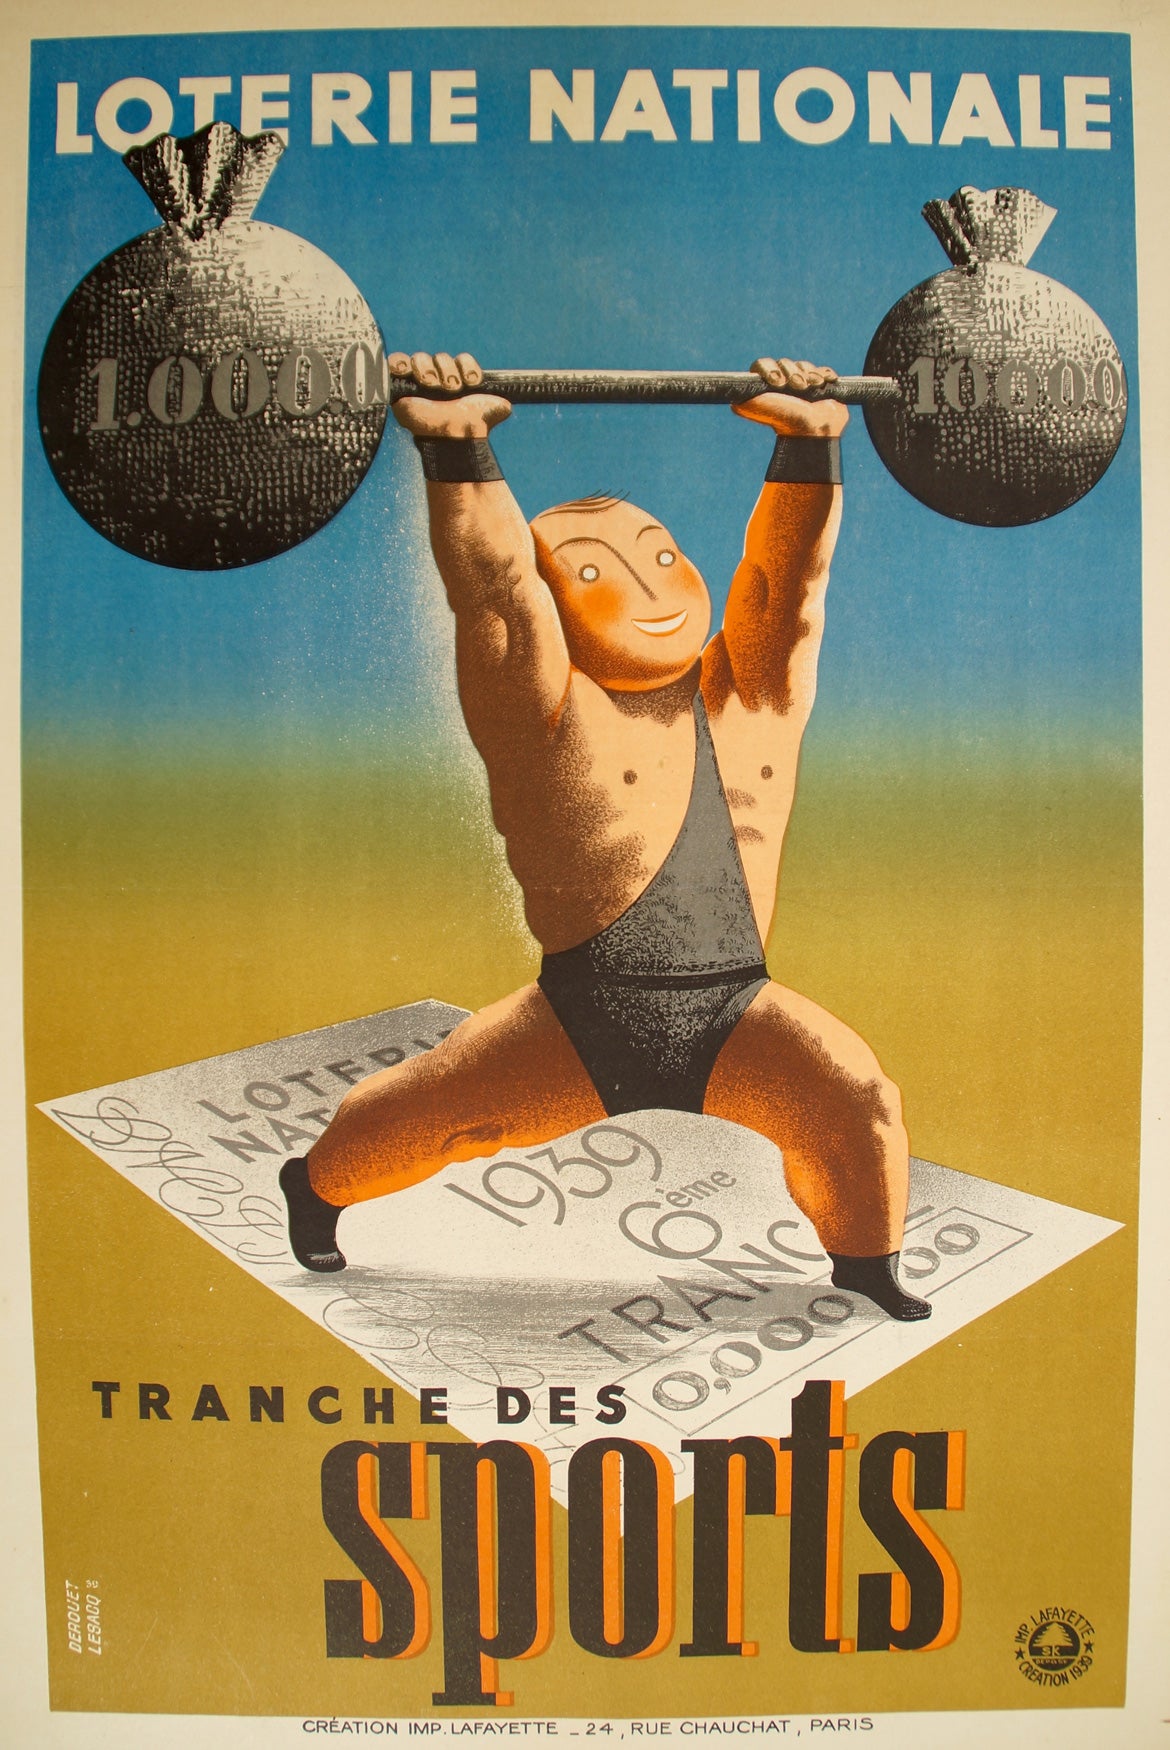 Affiche ancienne Loterie Nationale - Tranche des Sports Par Derouet Lesacq, 1939 6 ème tranche des sports